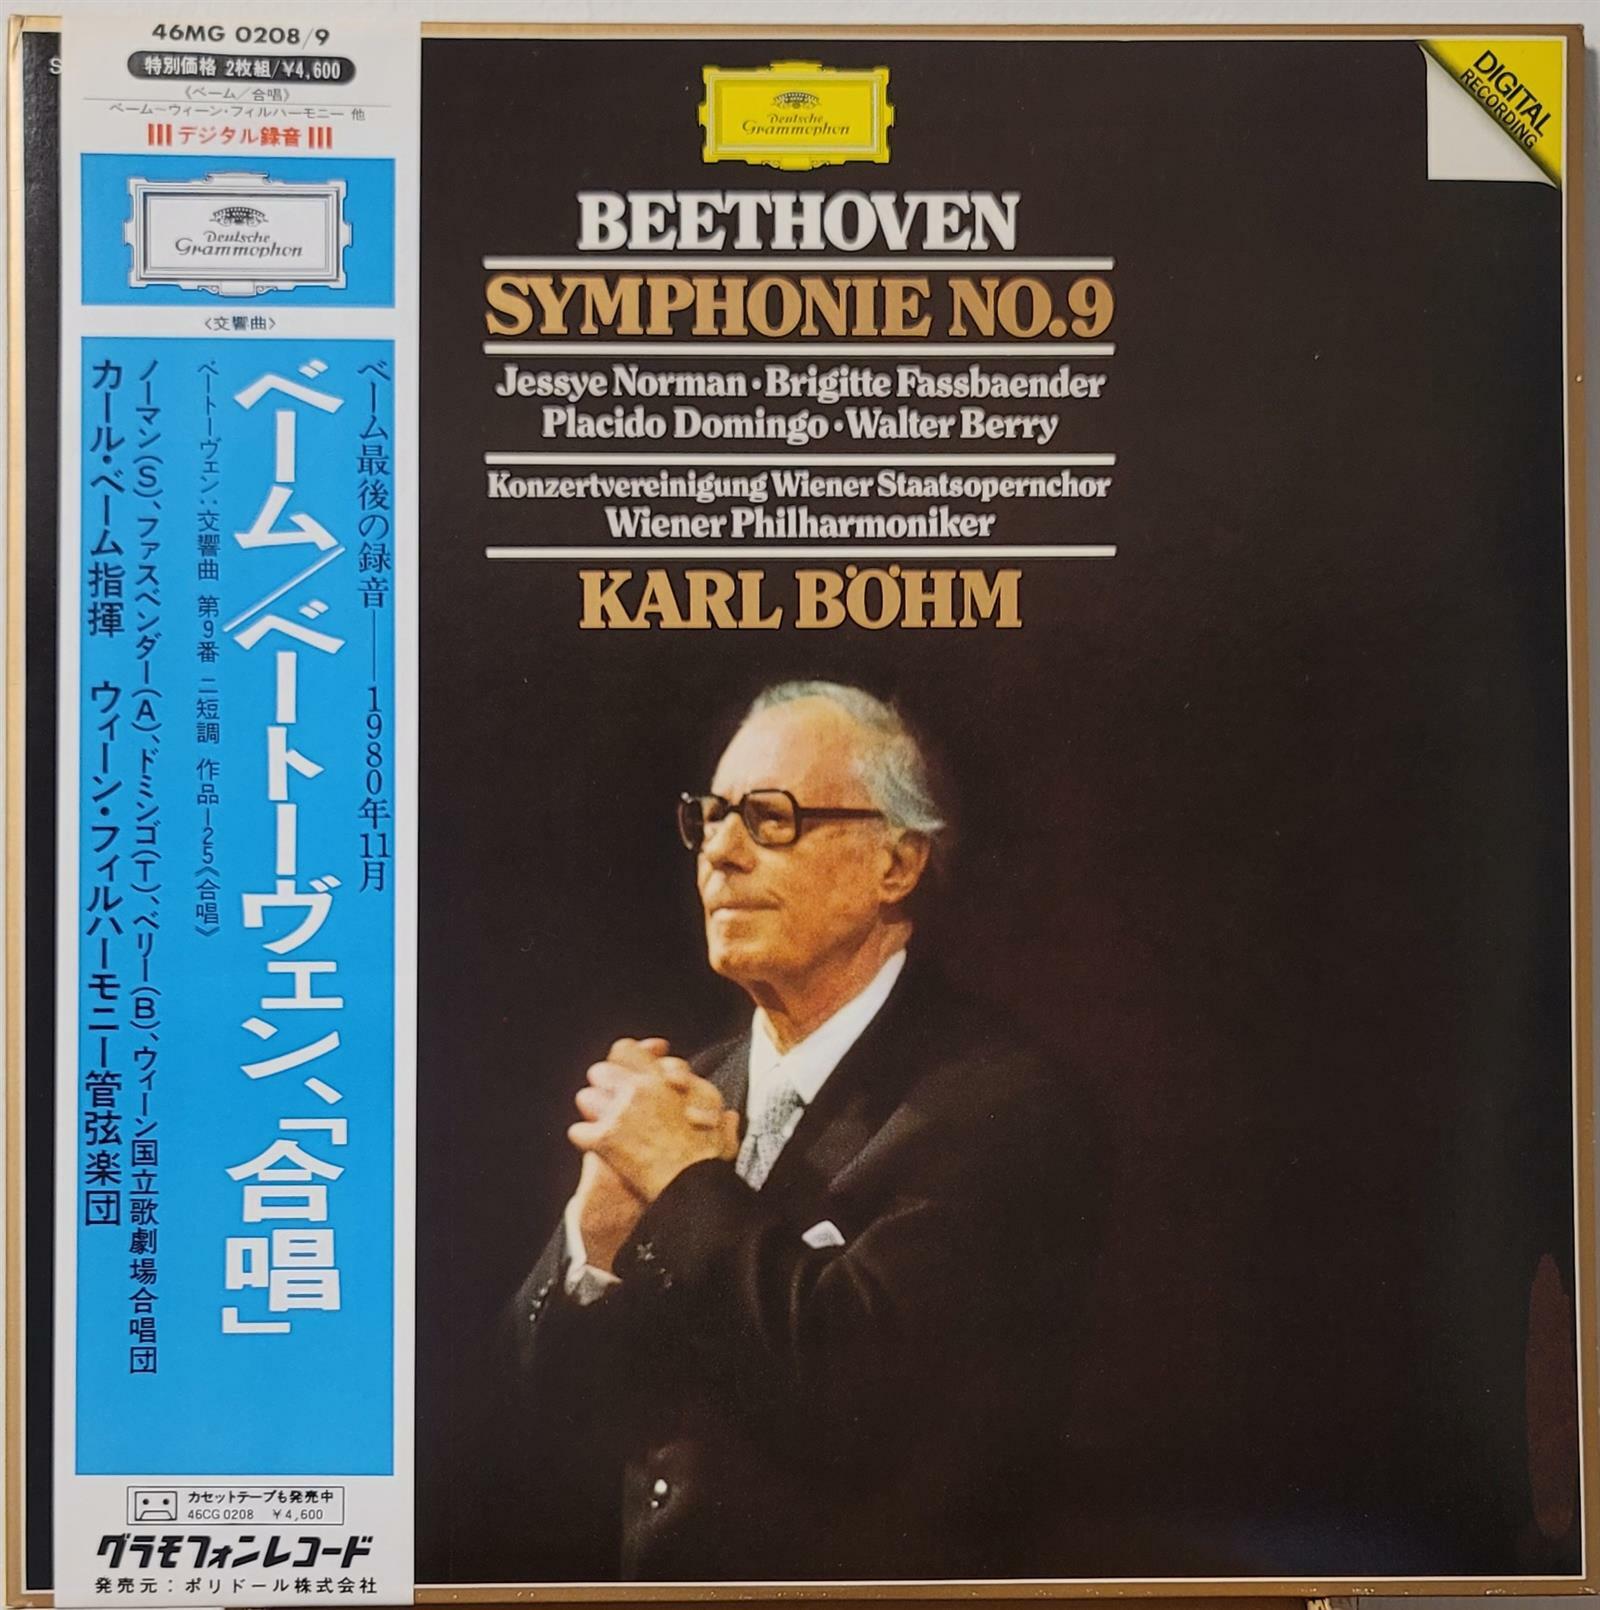 [중고] [LP] 81년 Beethoven Symphony No.9 Karl Bohm 베토벤 교향곡 9번 칼 뵘 [2LP 일본반] 게이트폴드 1981년